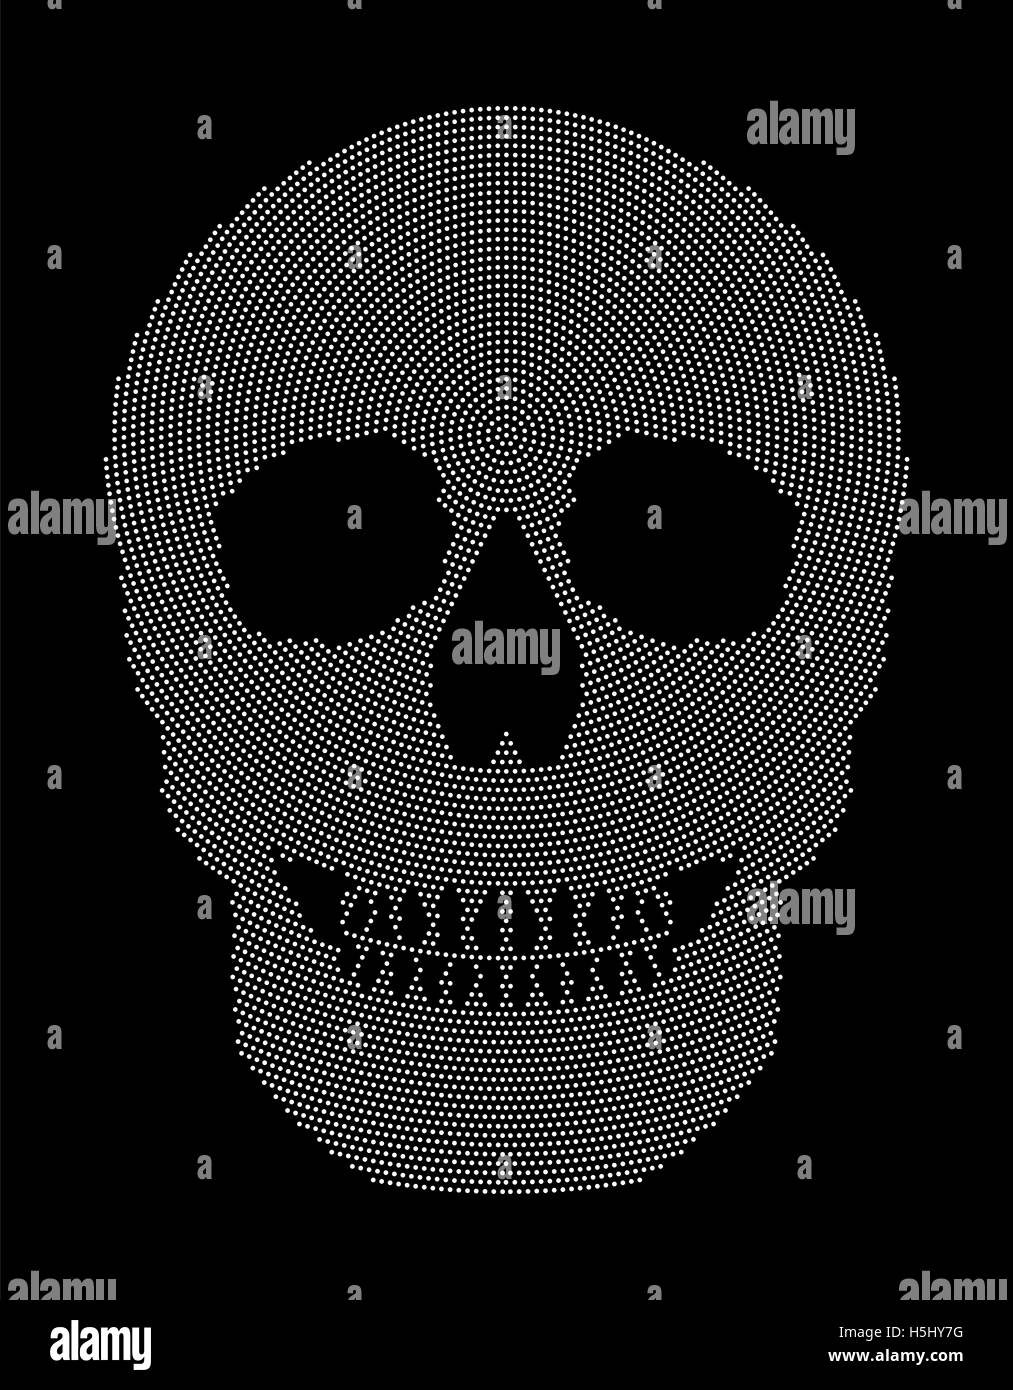 Radiale du crâne. Symbole de la structure osseuse d'une tête d'un squelette. Formée par des points blancs. Banque D'Images